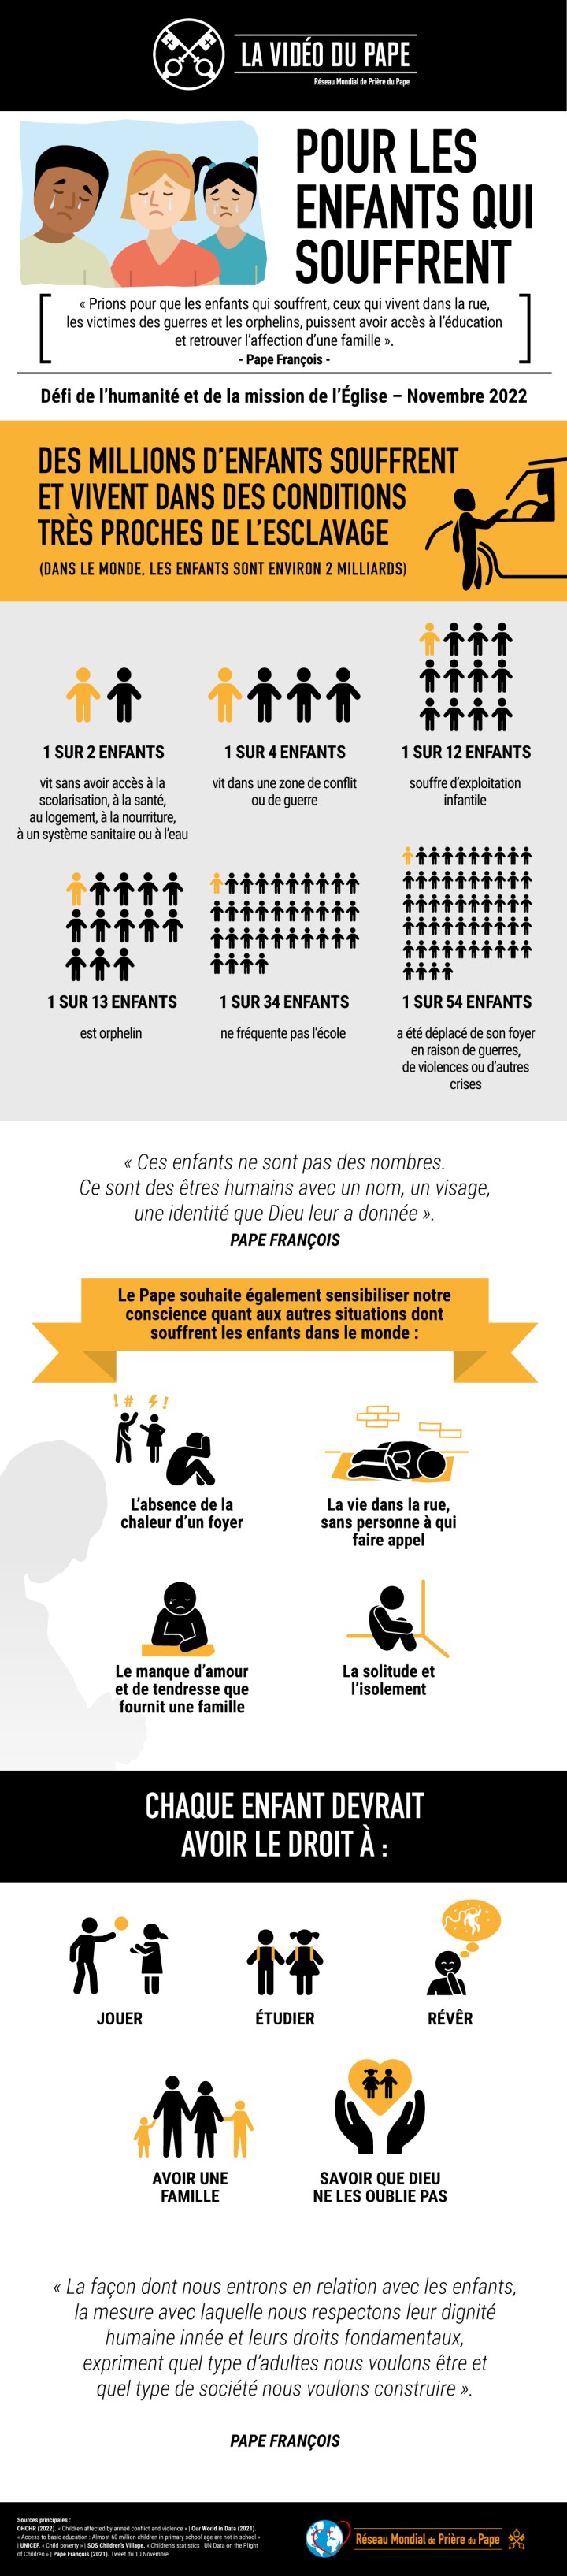 Infographic_-_TPV_11_2022_FR_-_Pour_les_enfants_qui_souffrent.jpg